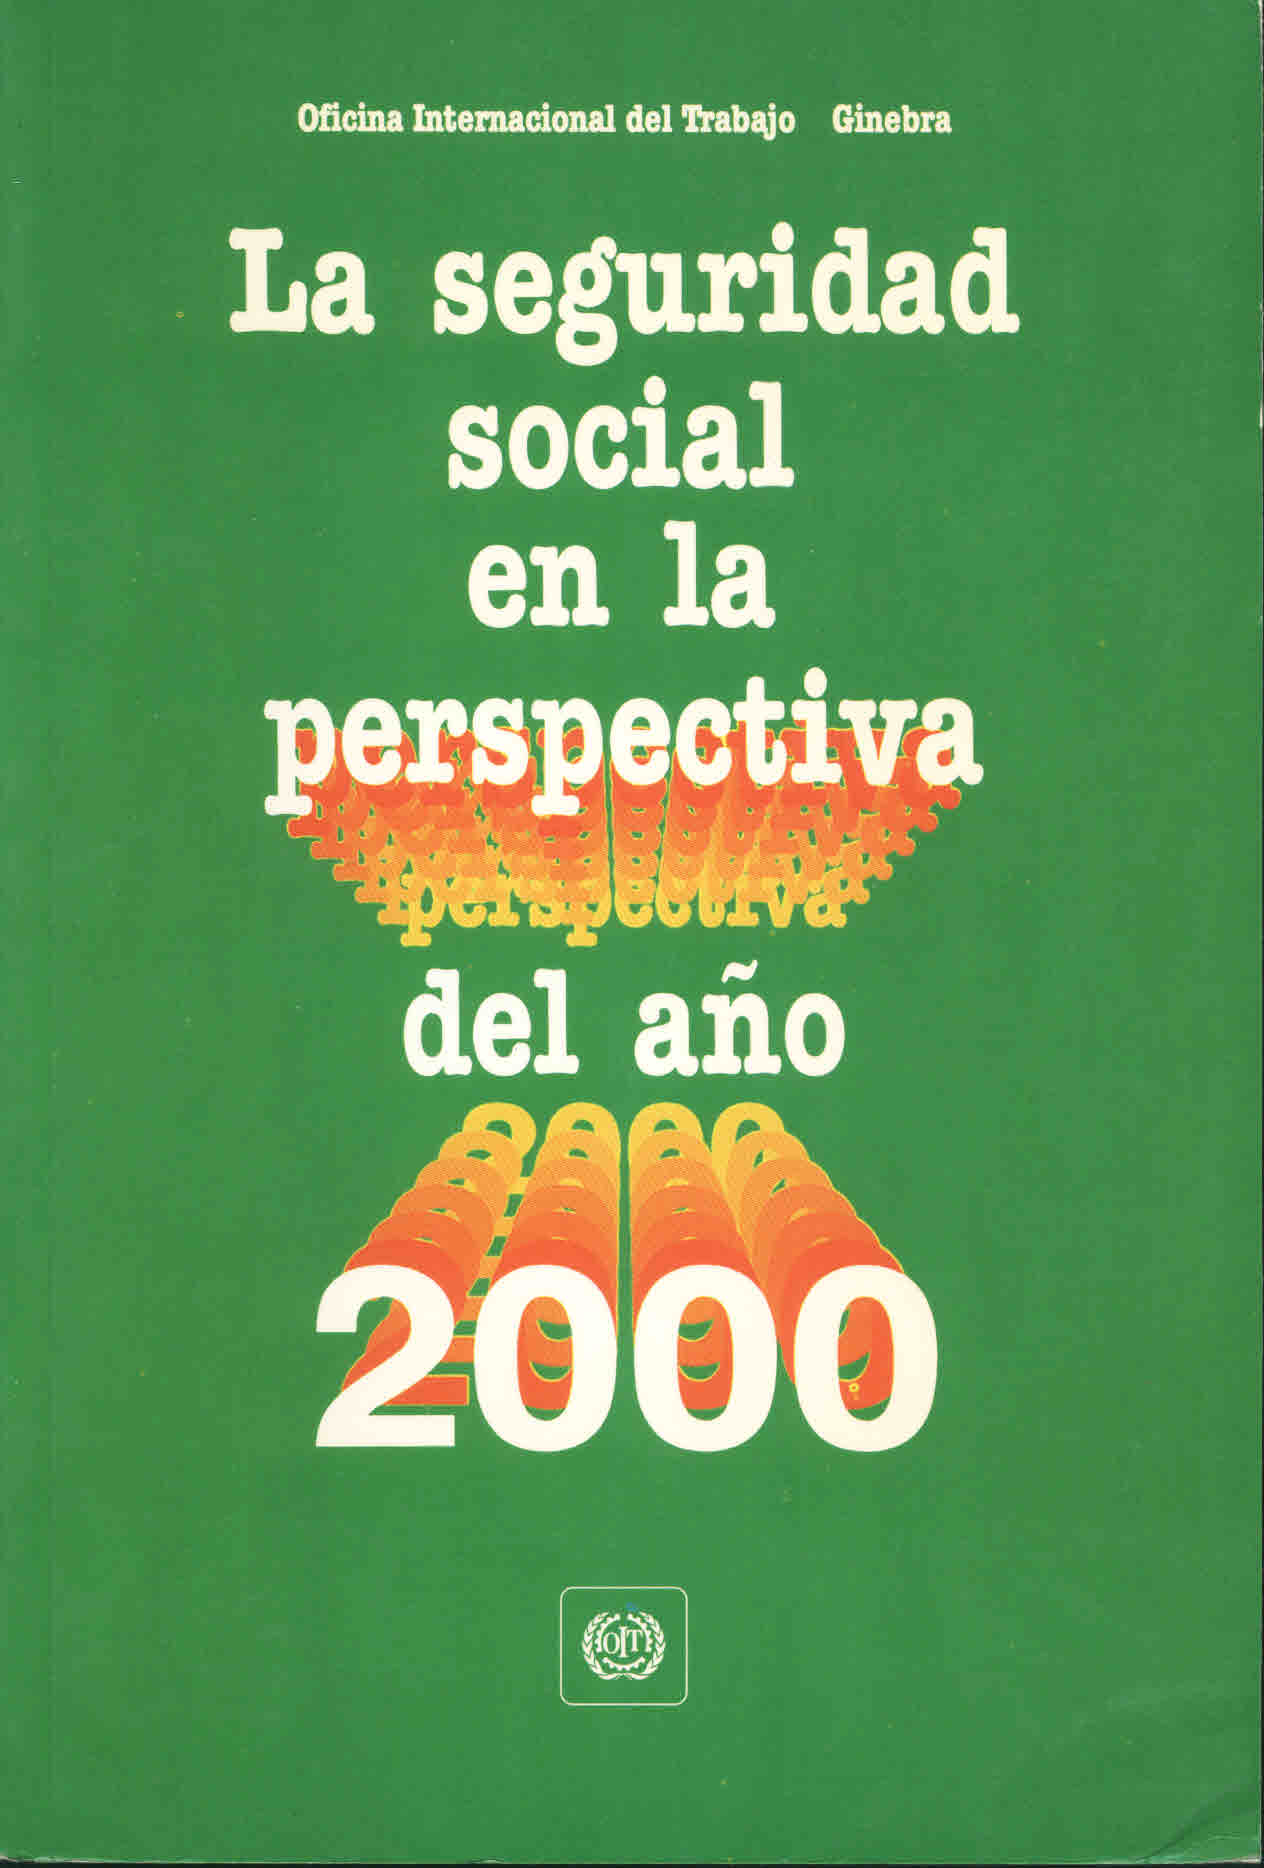 La seguridad social en la perspectiva del año 2000